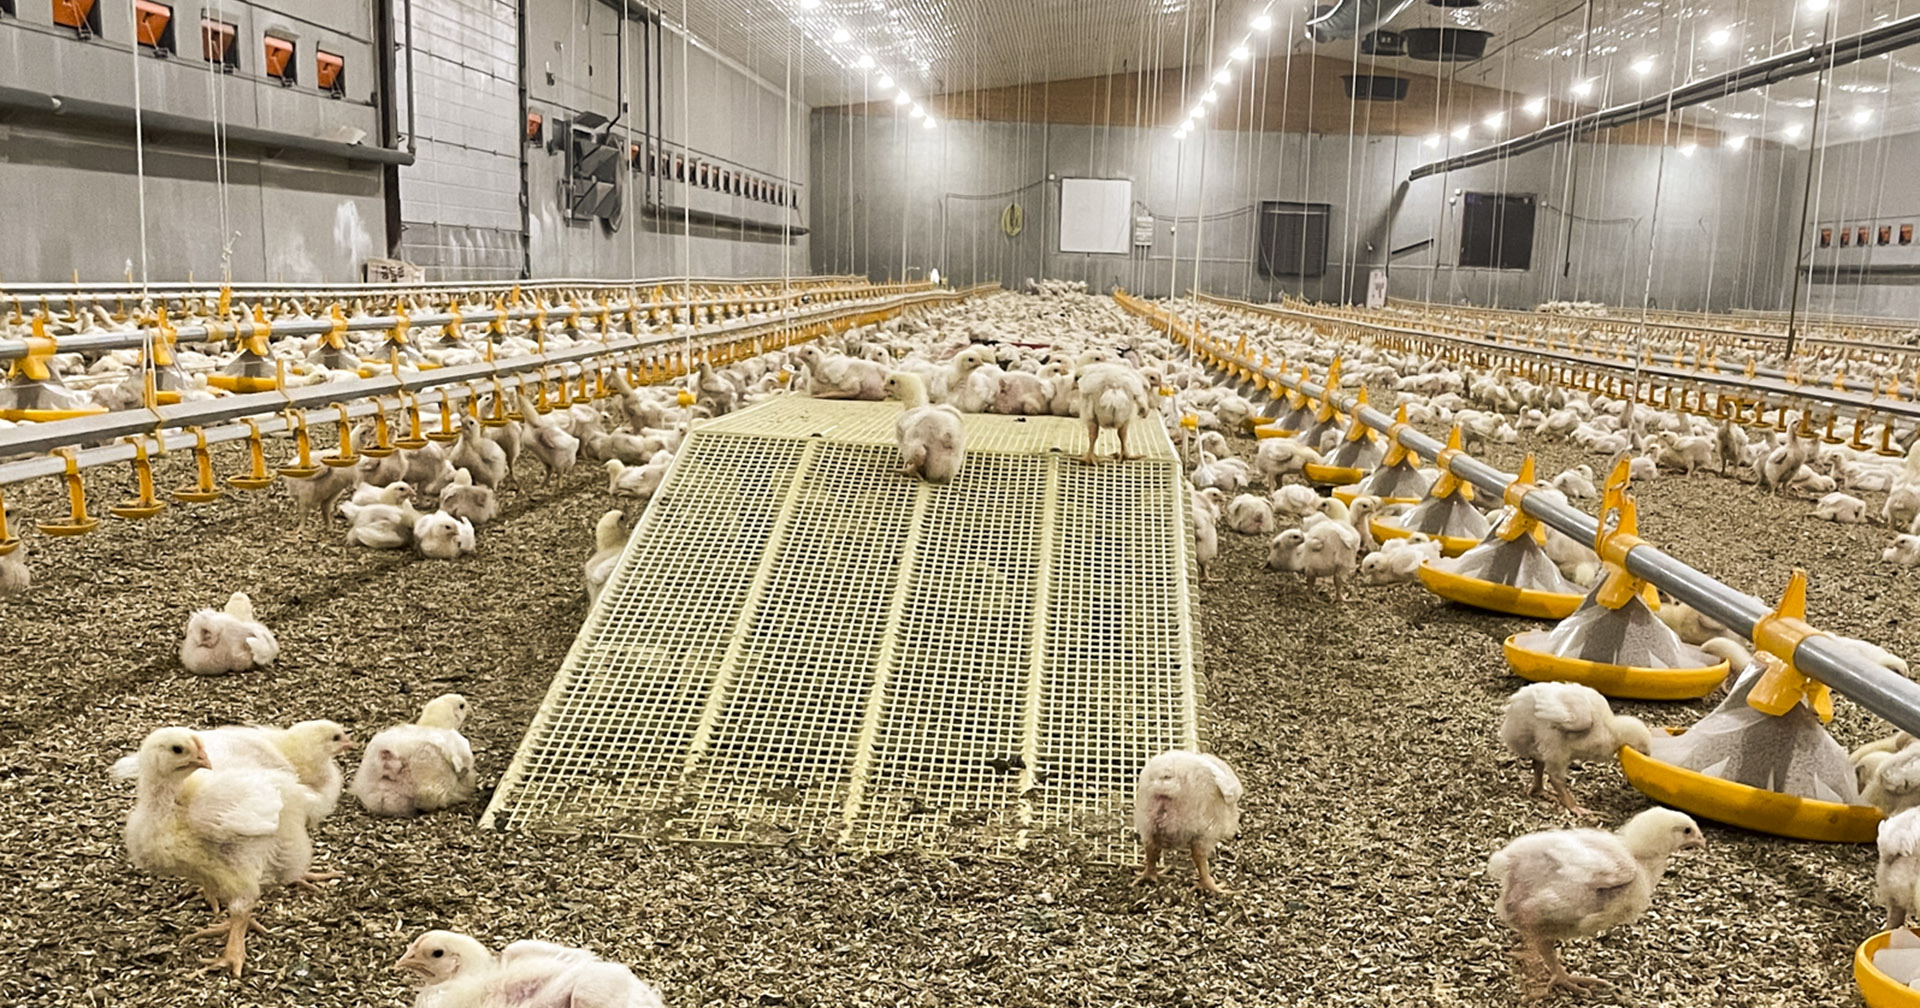 Fornøyde kyllinger: Moderne LED-lys med dagslysspekter gir nye muligheter til å optimalisere lysklimaet i fjørfehusene.